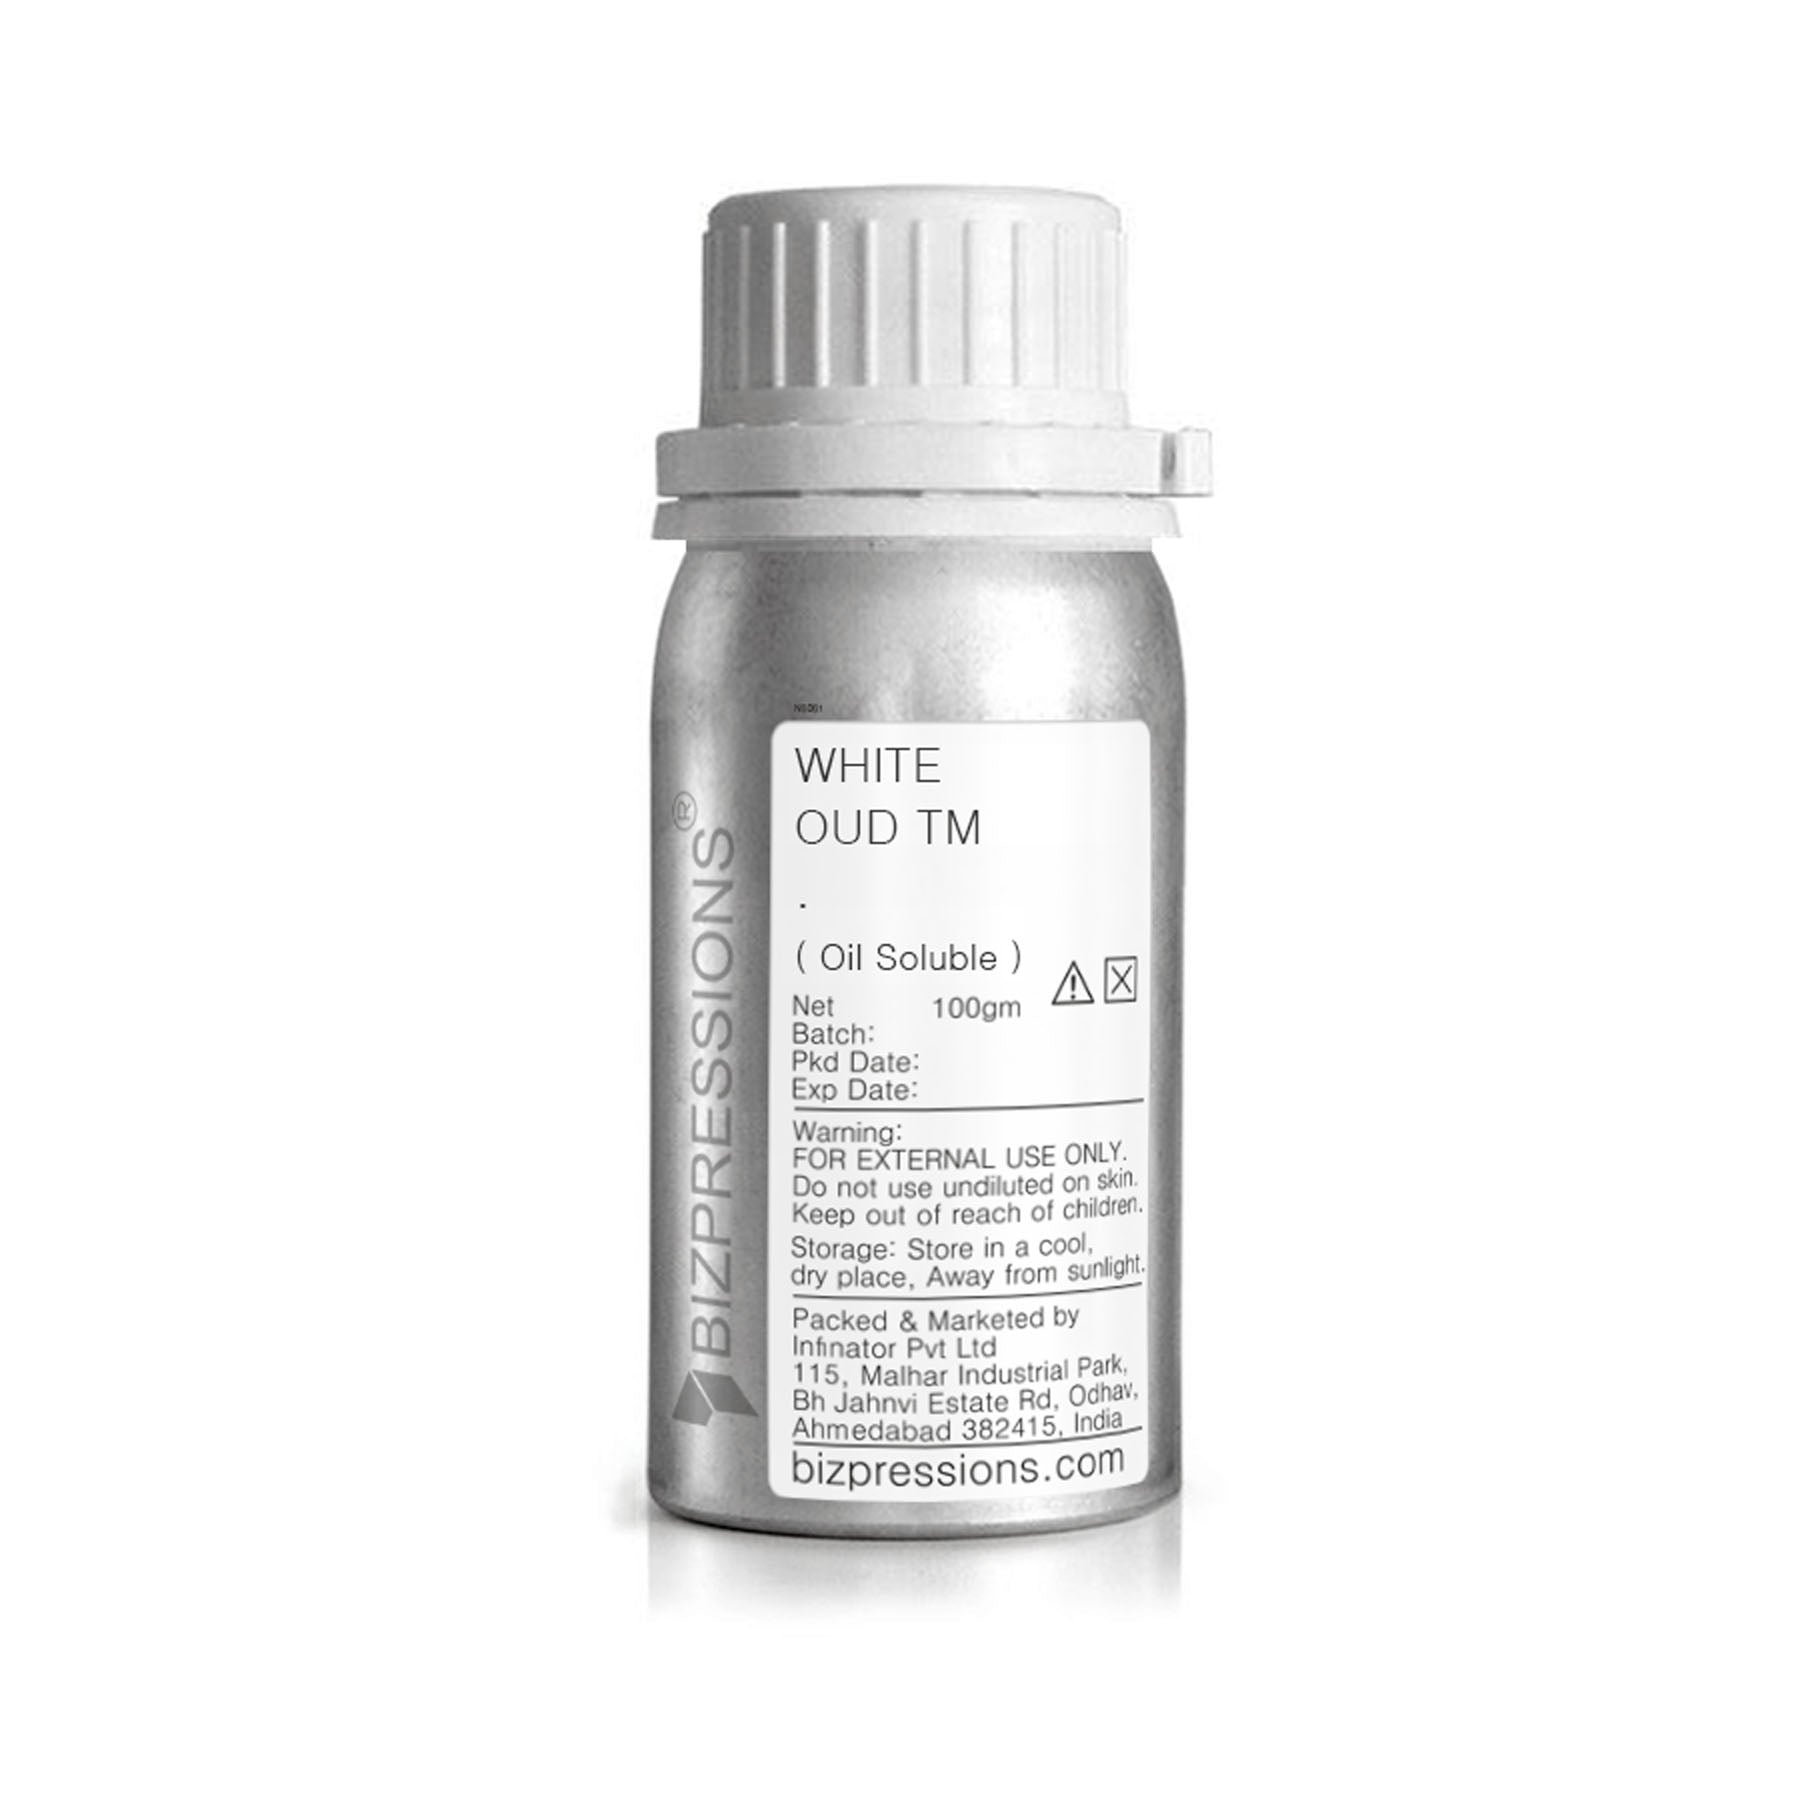 WHITE OUD TM - Fragrance ( Oil Soluble ) - 100 gm